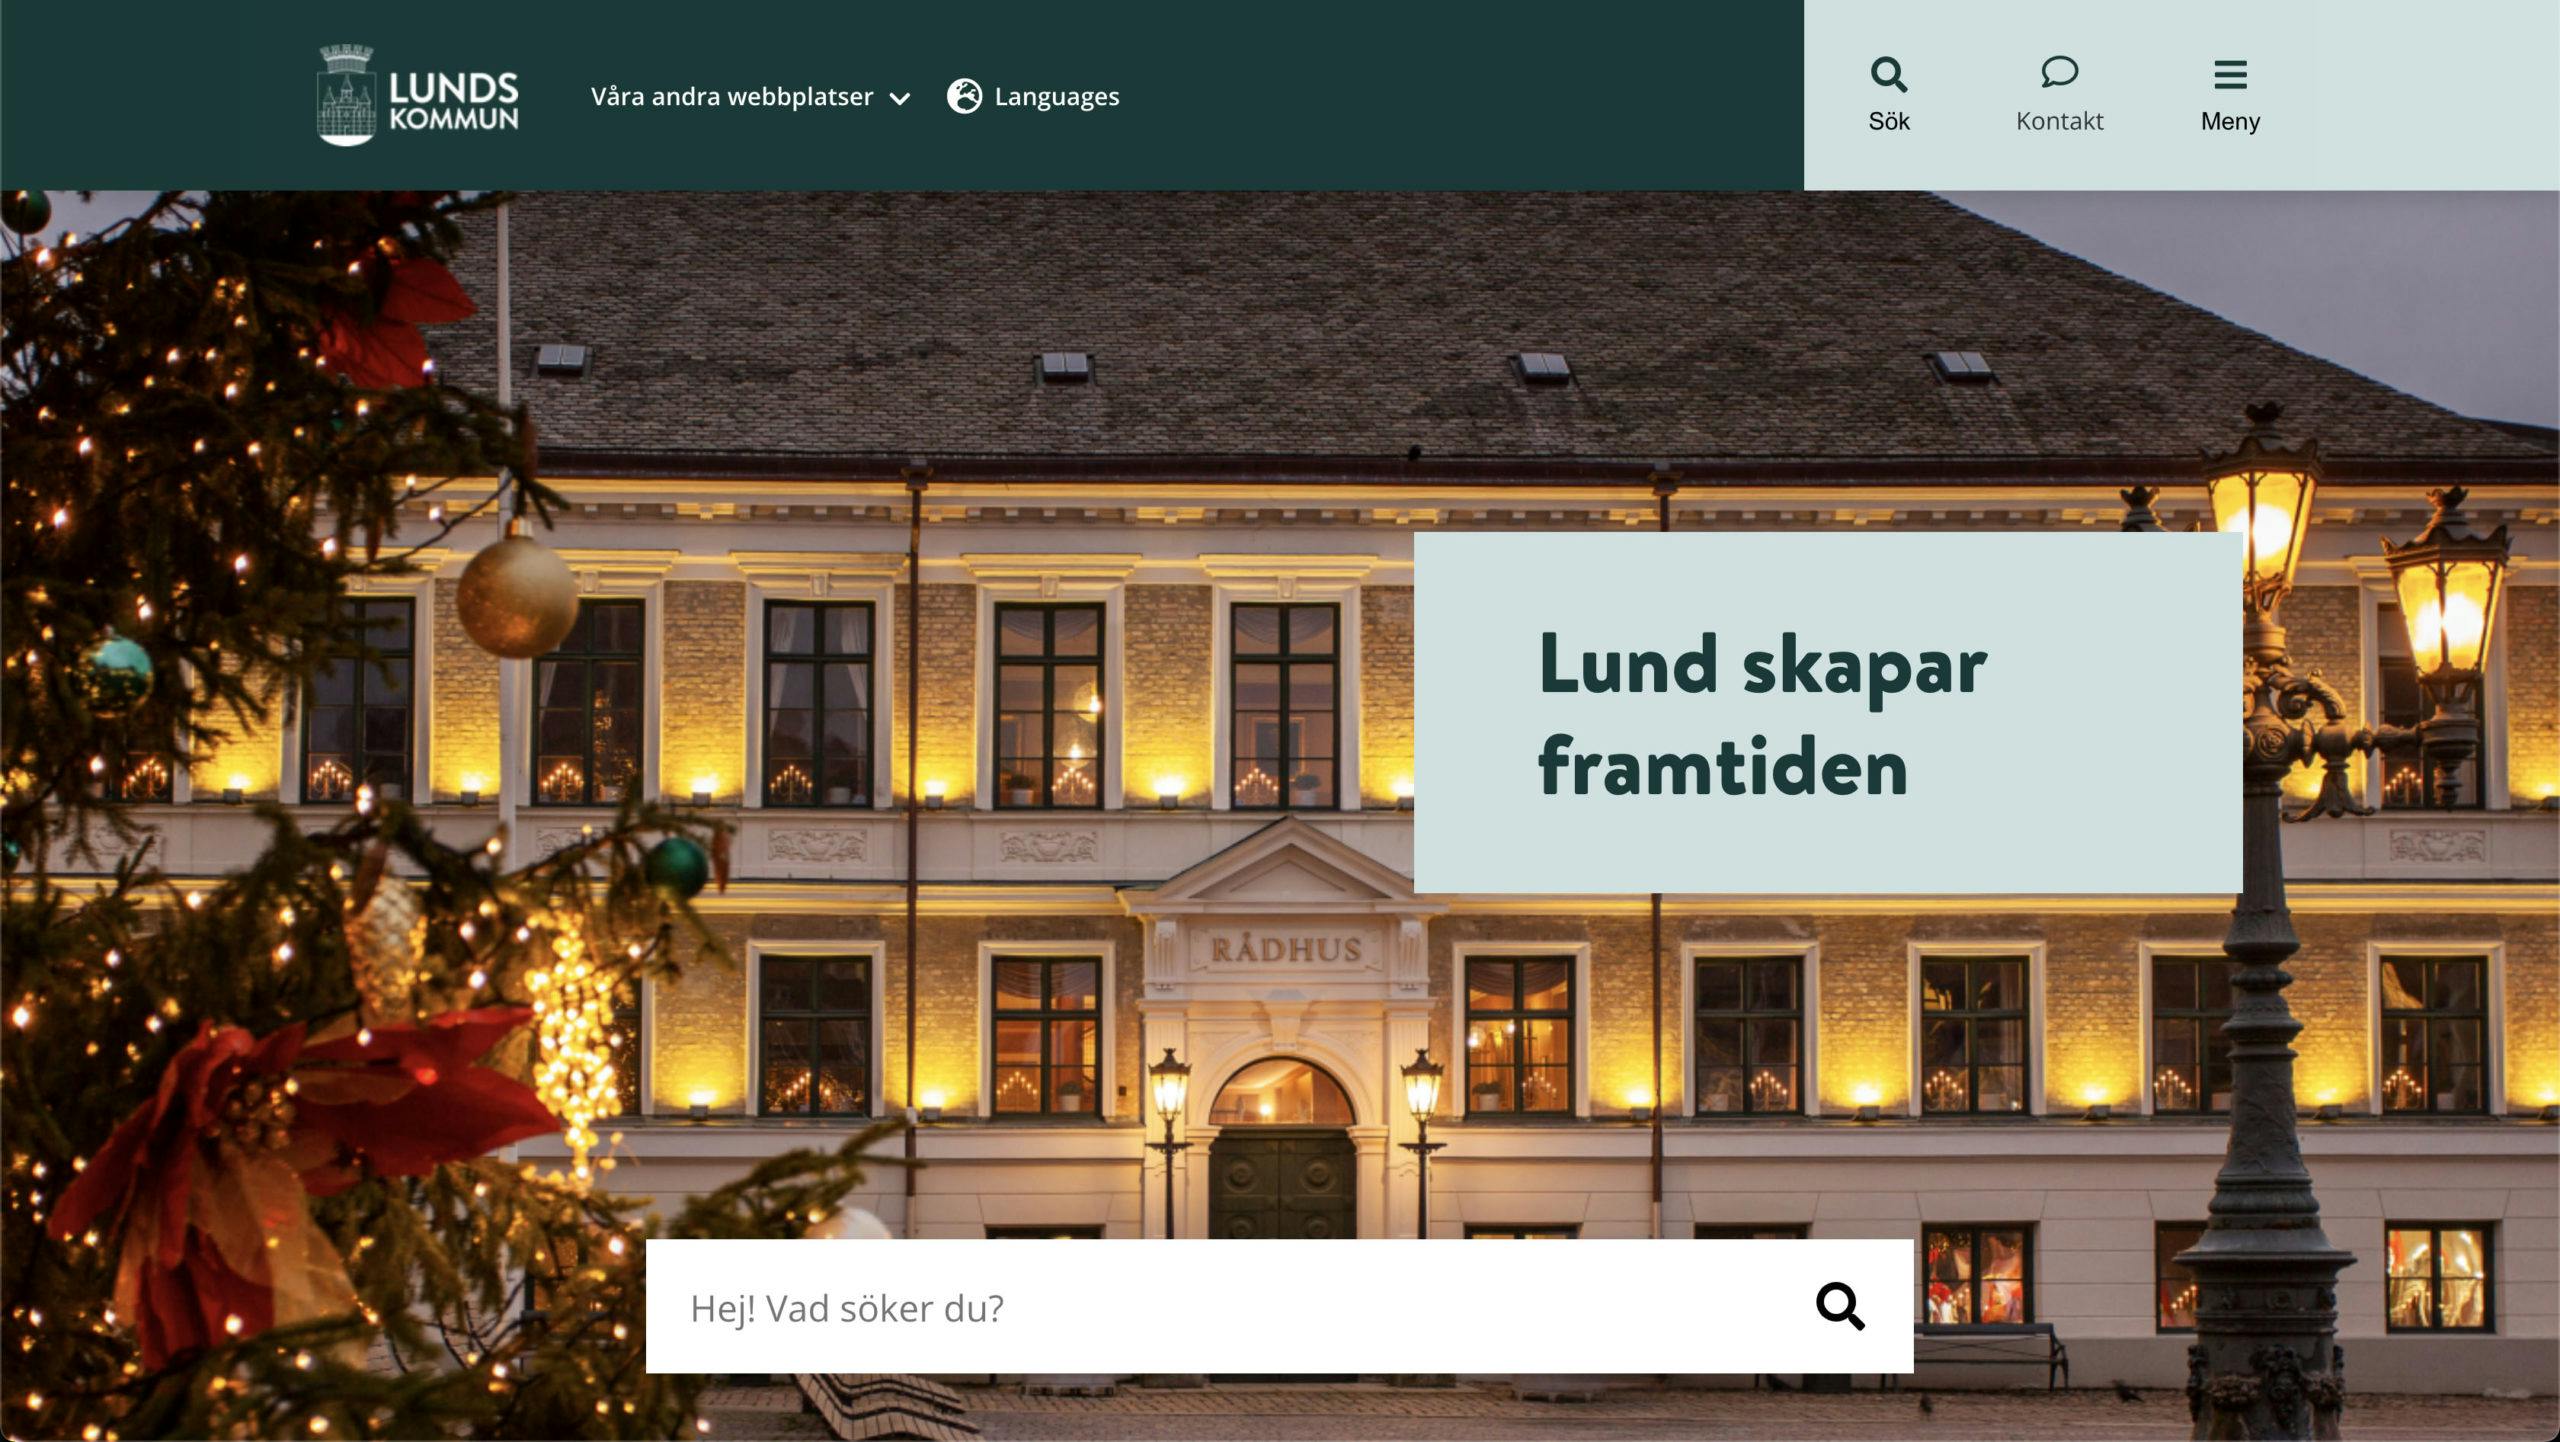 Lund kommuns nya webbplats startsida, utvecklad av Consid